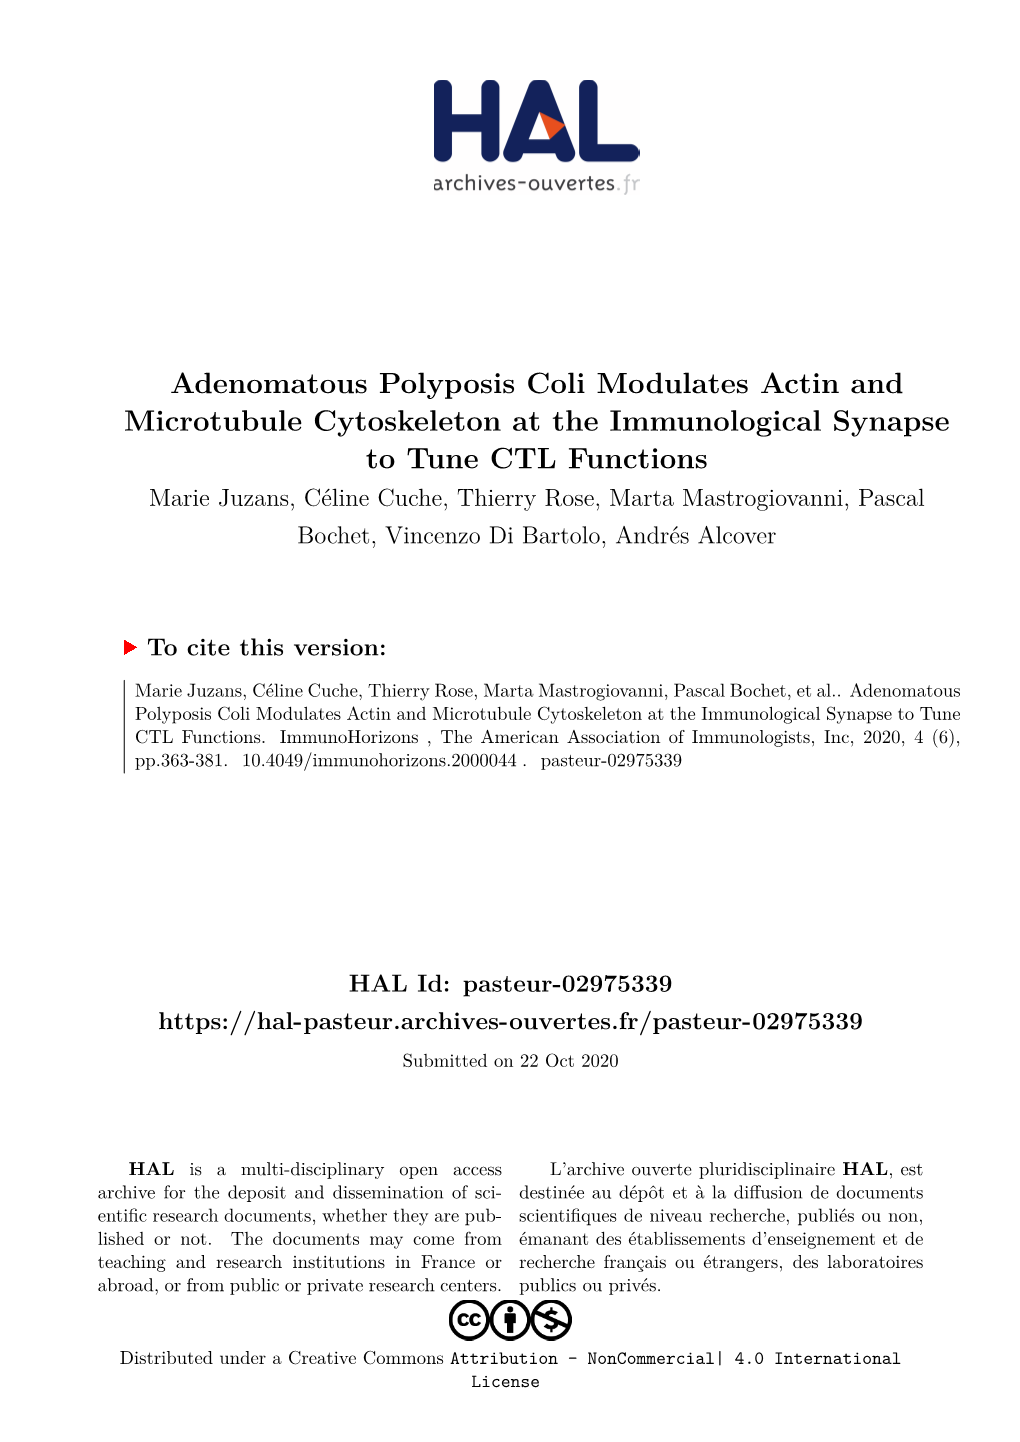 Adenomatous Polyposis Coli Modulates Actin and Microtubule